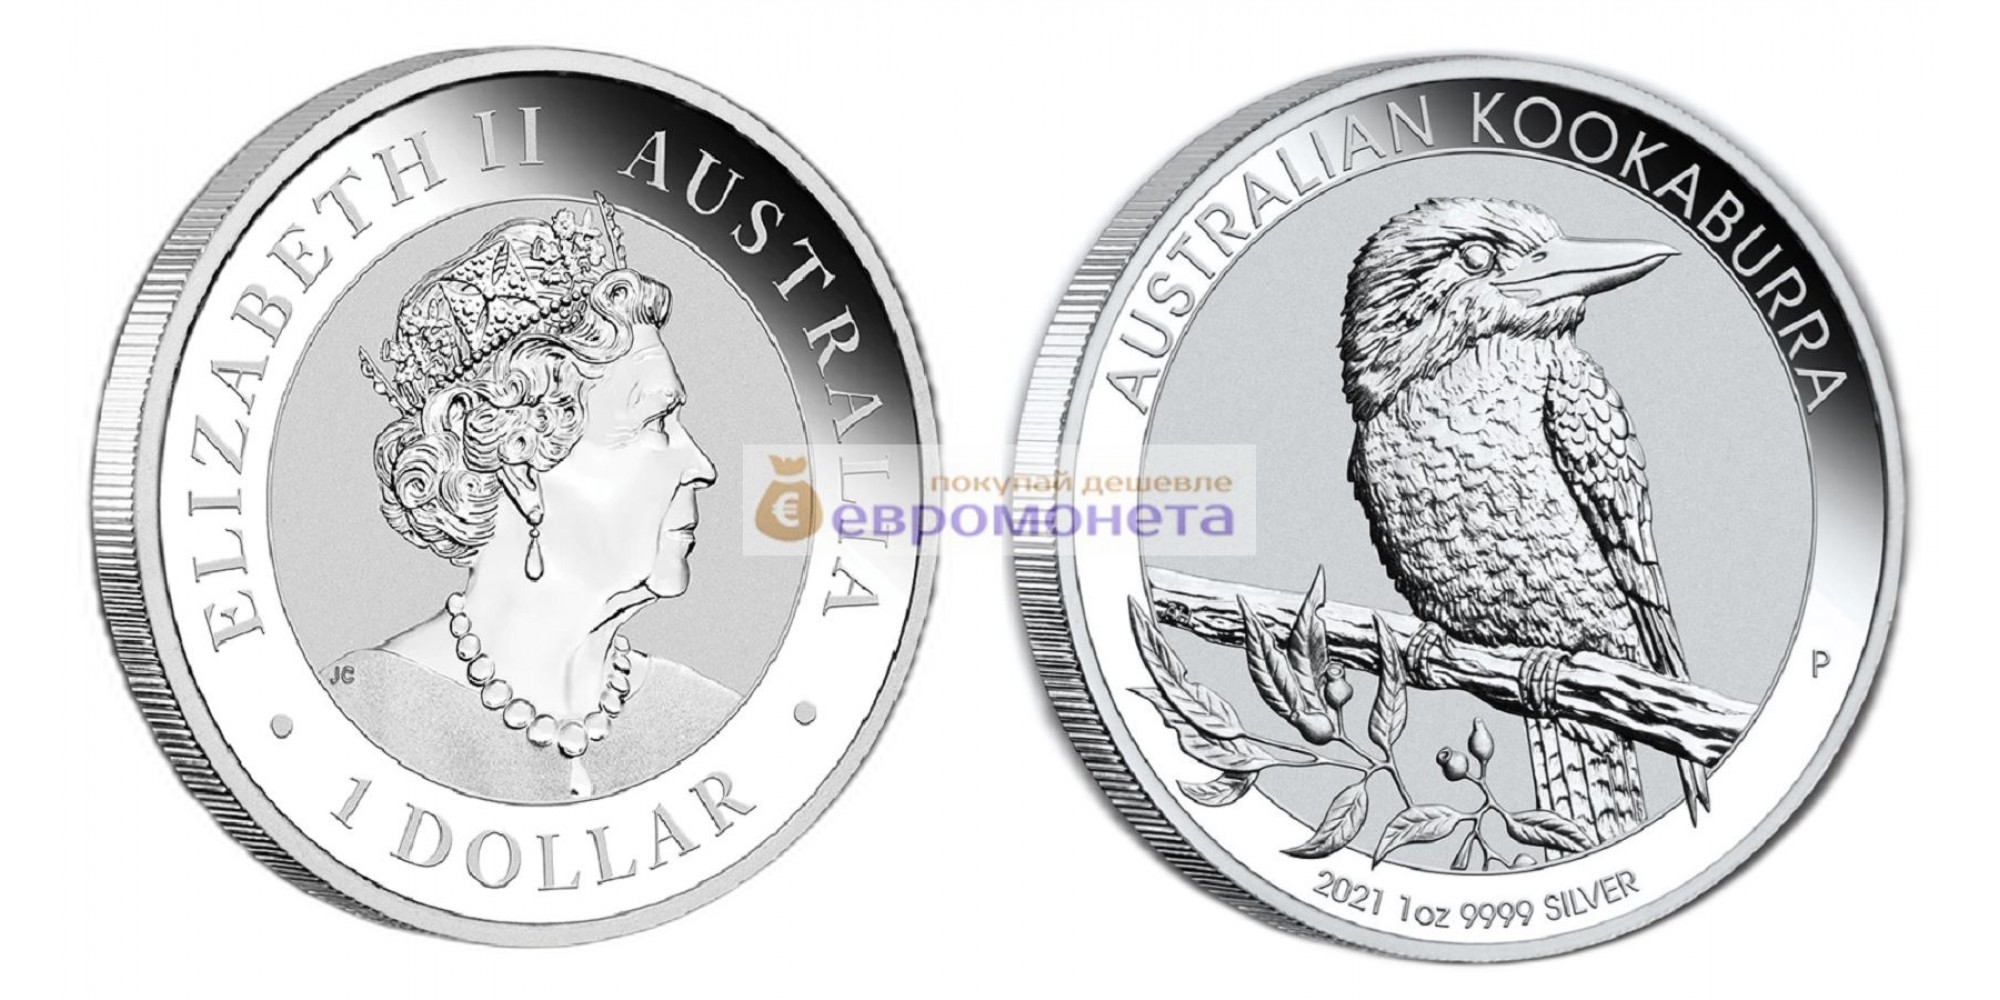 Австралия 1 доллар 2021 год Австралийская Кукабарра. Серебро унция 999 пробы